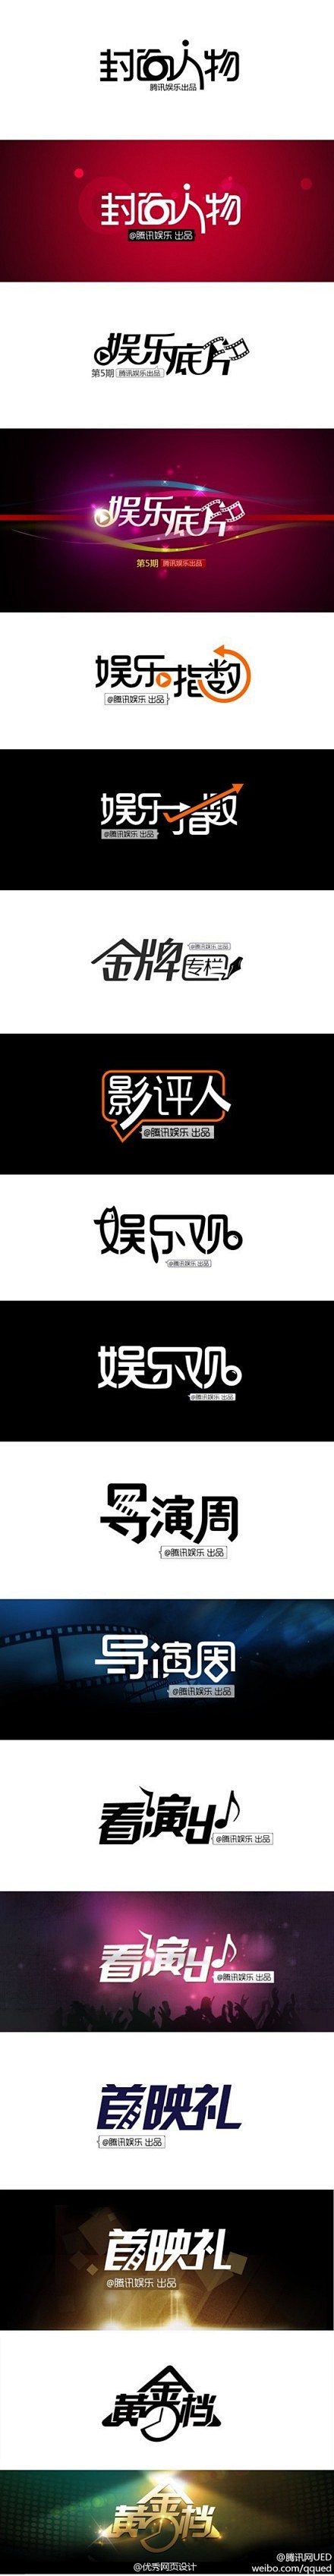 【推荐！中文字体设计欣赏】@腾讯网UED